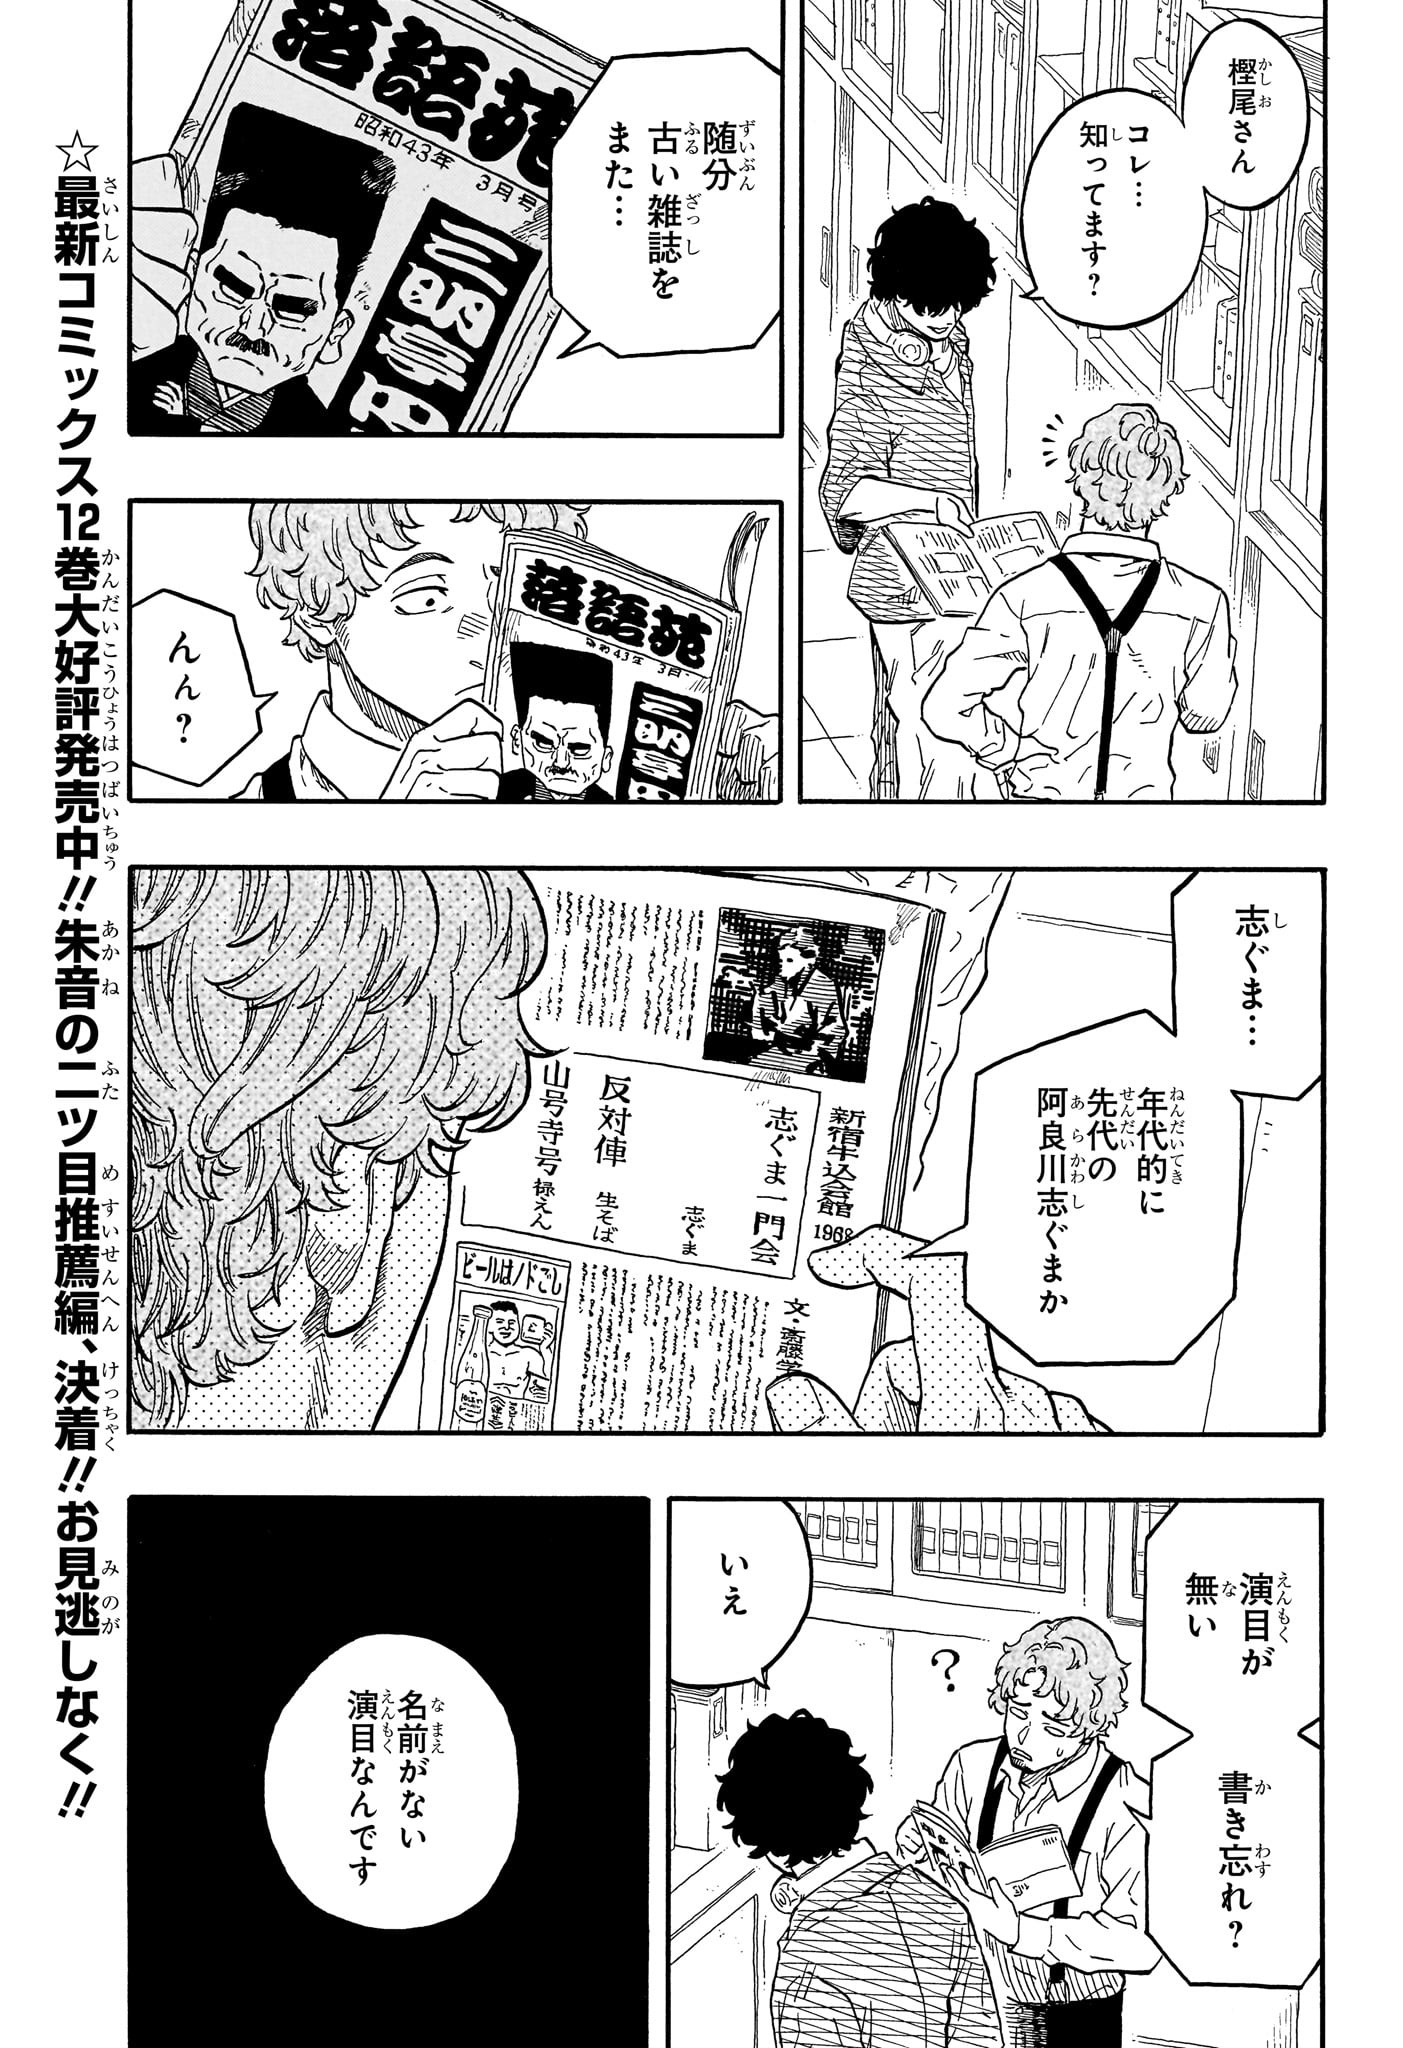 Akane-Banashi - Chapter 118 - Page 3